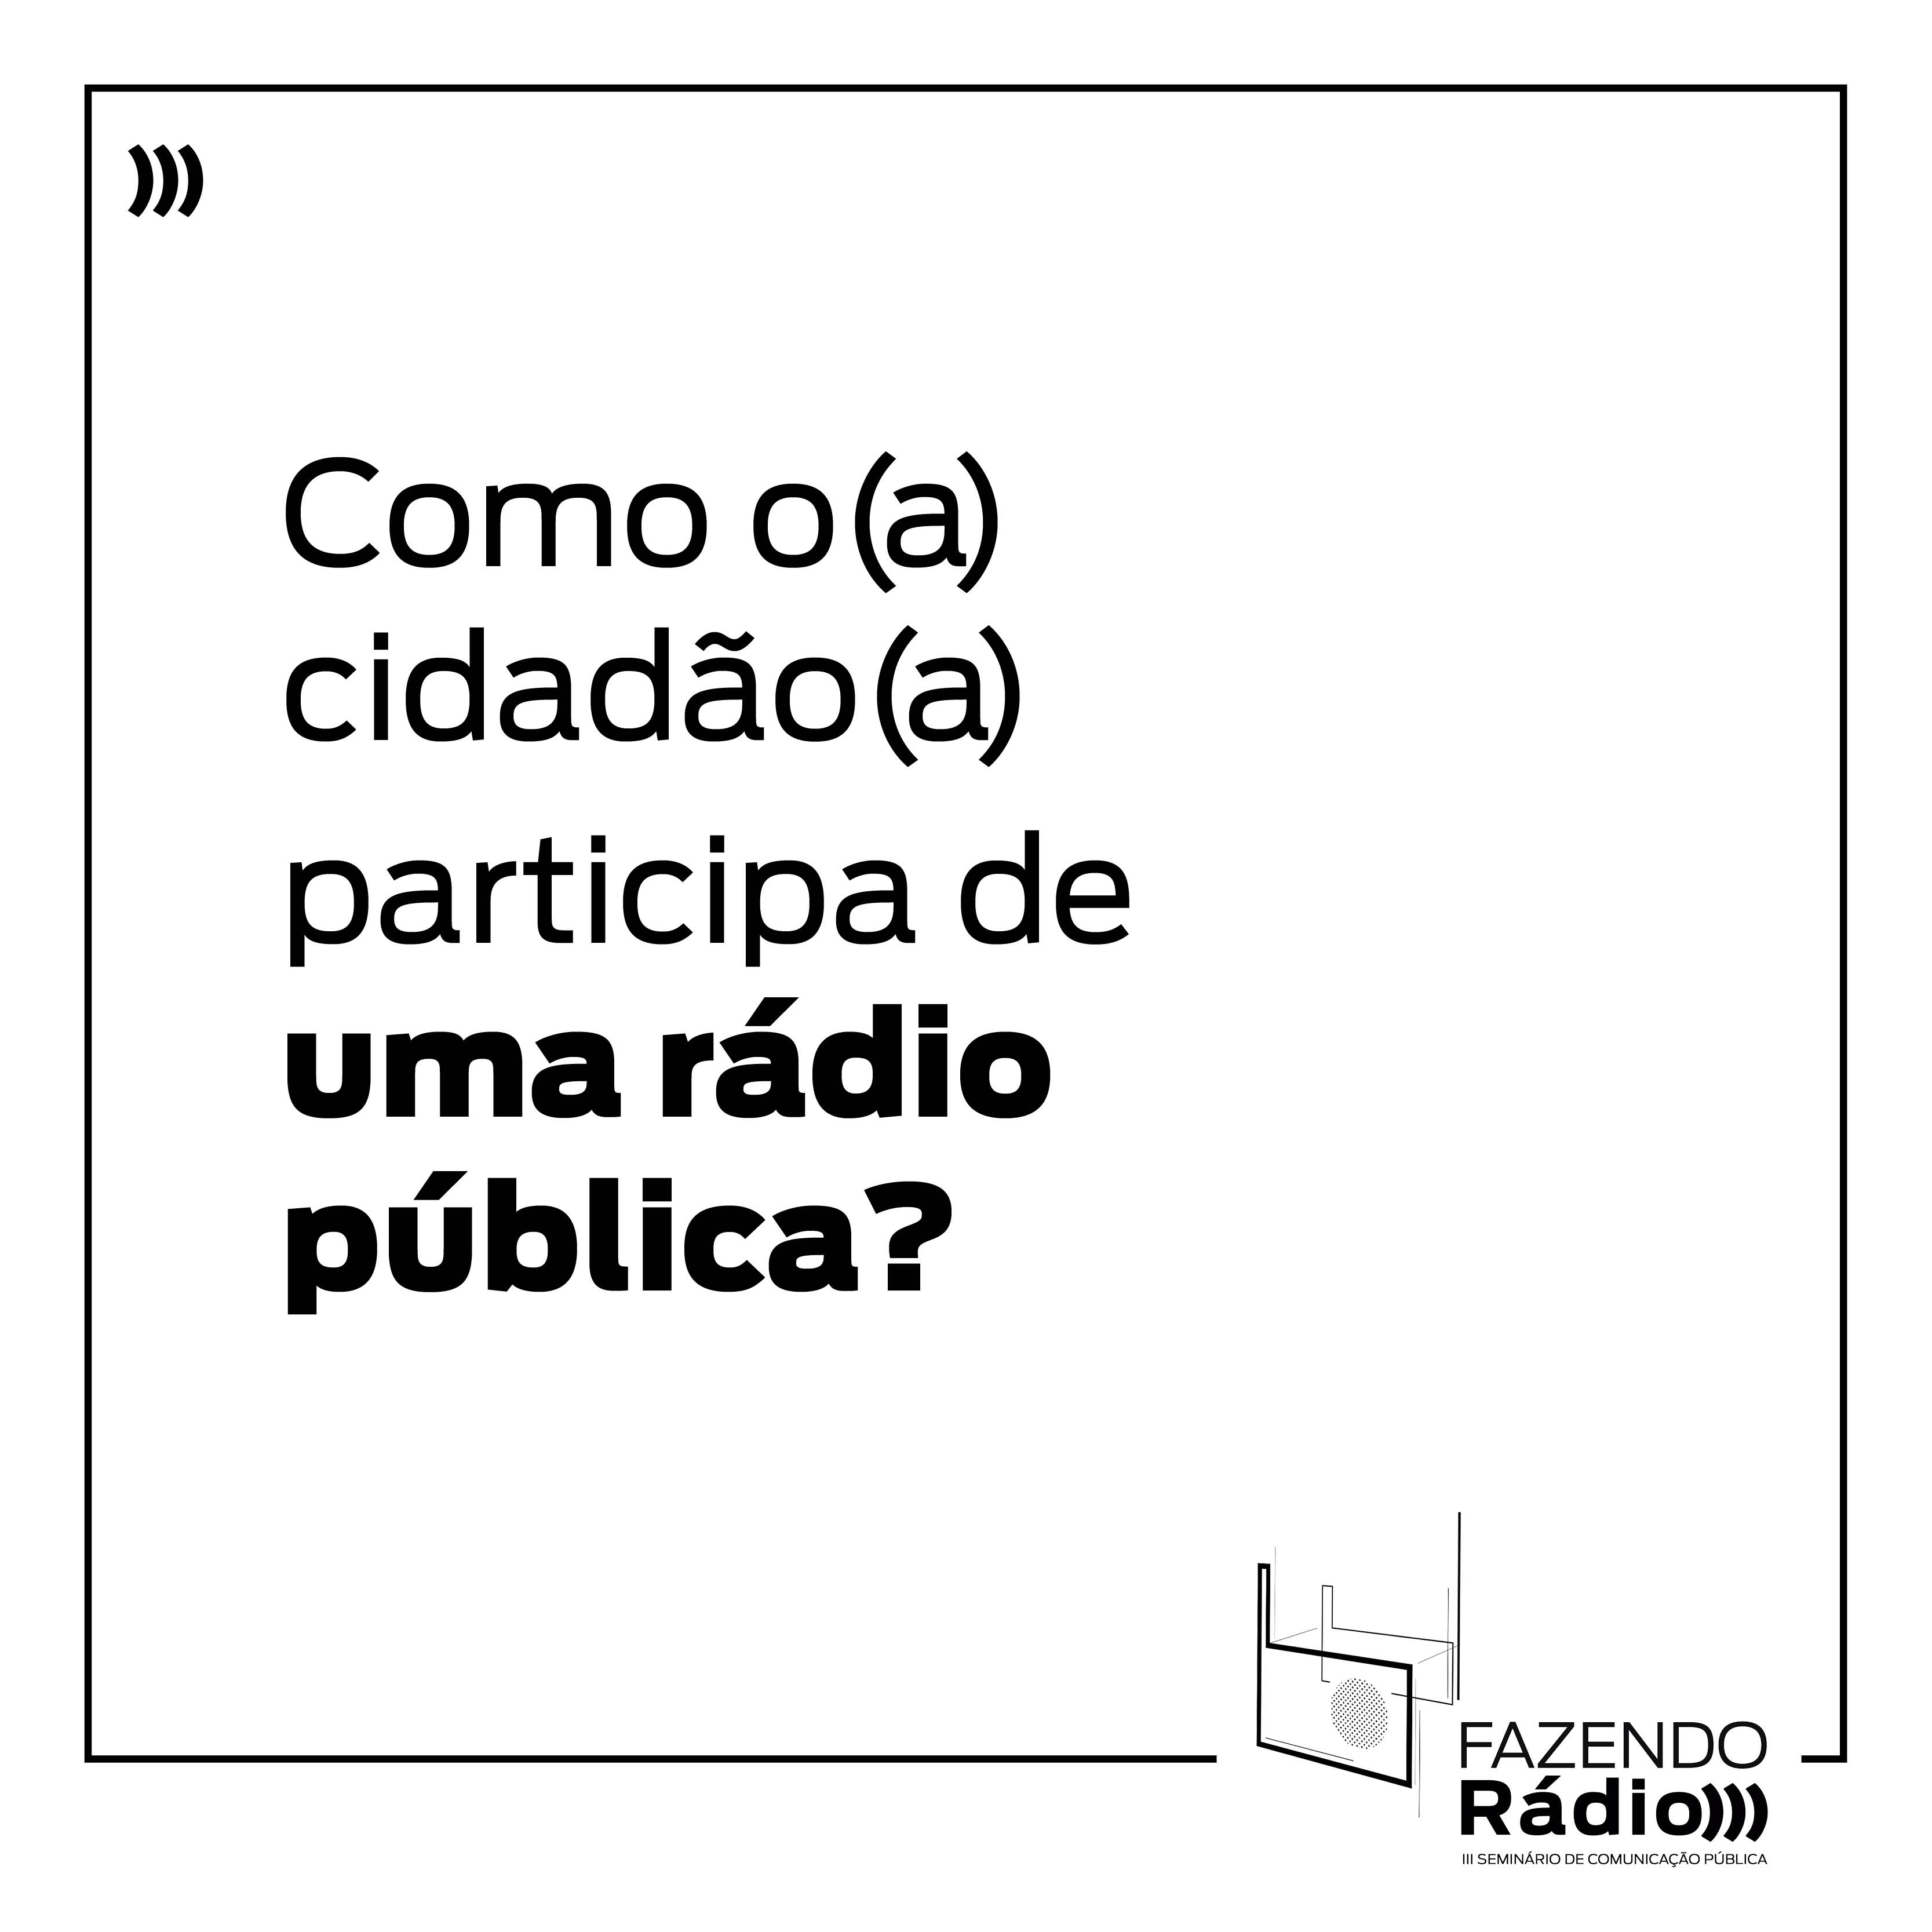 Cartão branco com a pergunta "Como o cidadão participa de uma rádio pública?" em preto. Logo do evento no canto inferior direito.